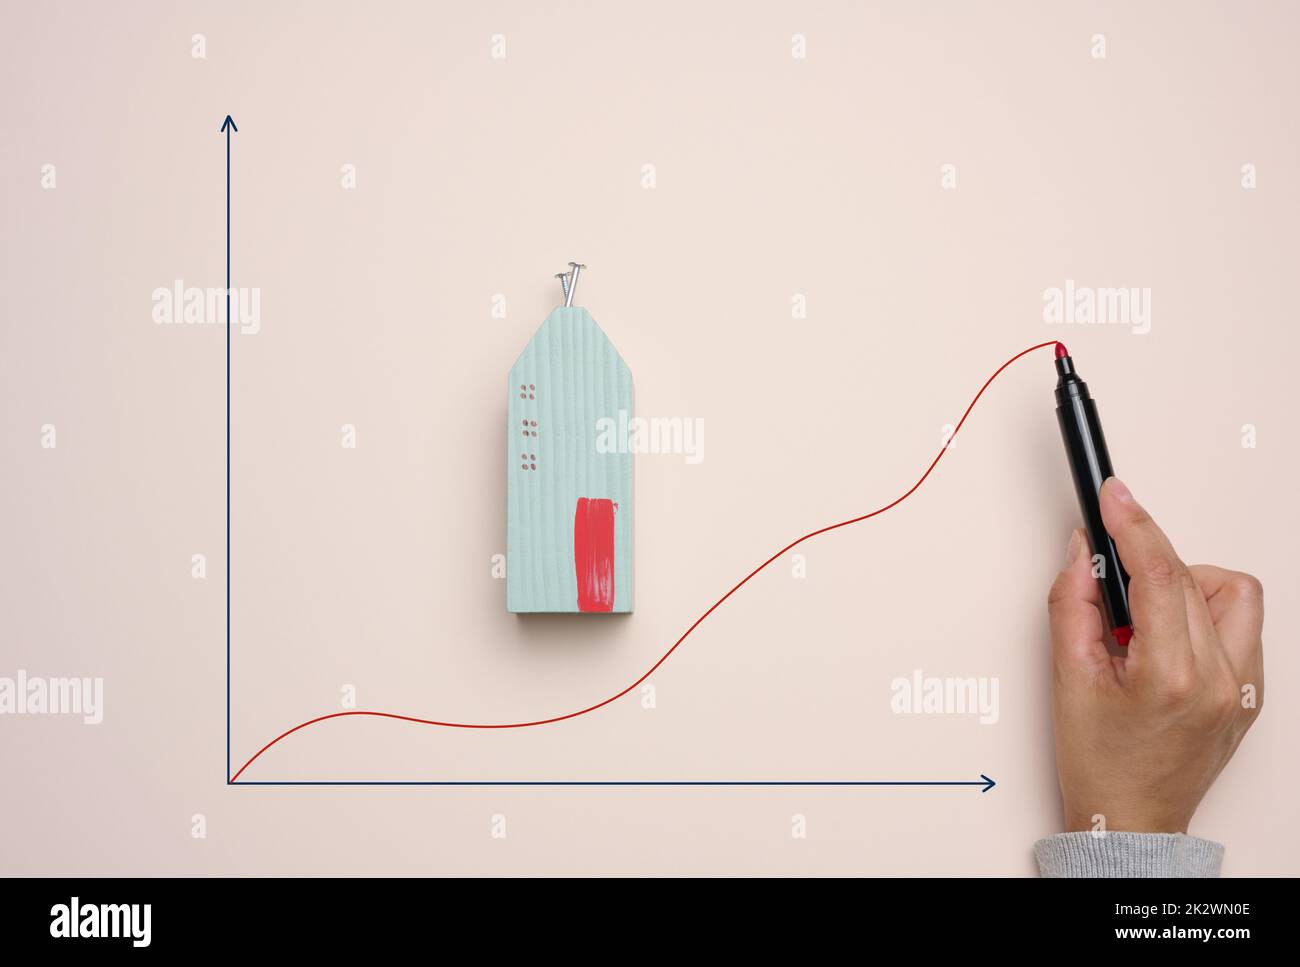 Une maison en bois miniature et une main de femme dessine un graphique avec des indicateurs de croissance Banque D'Images